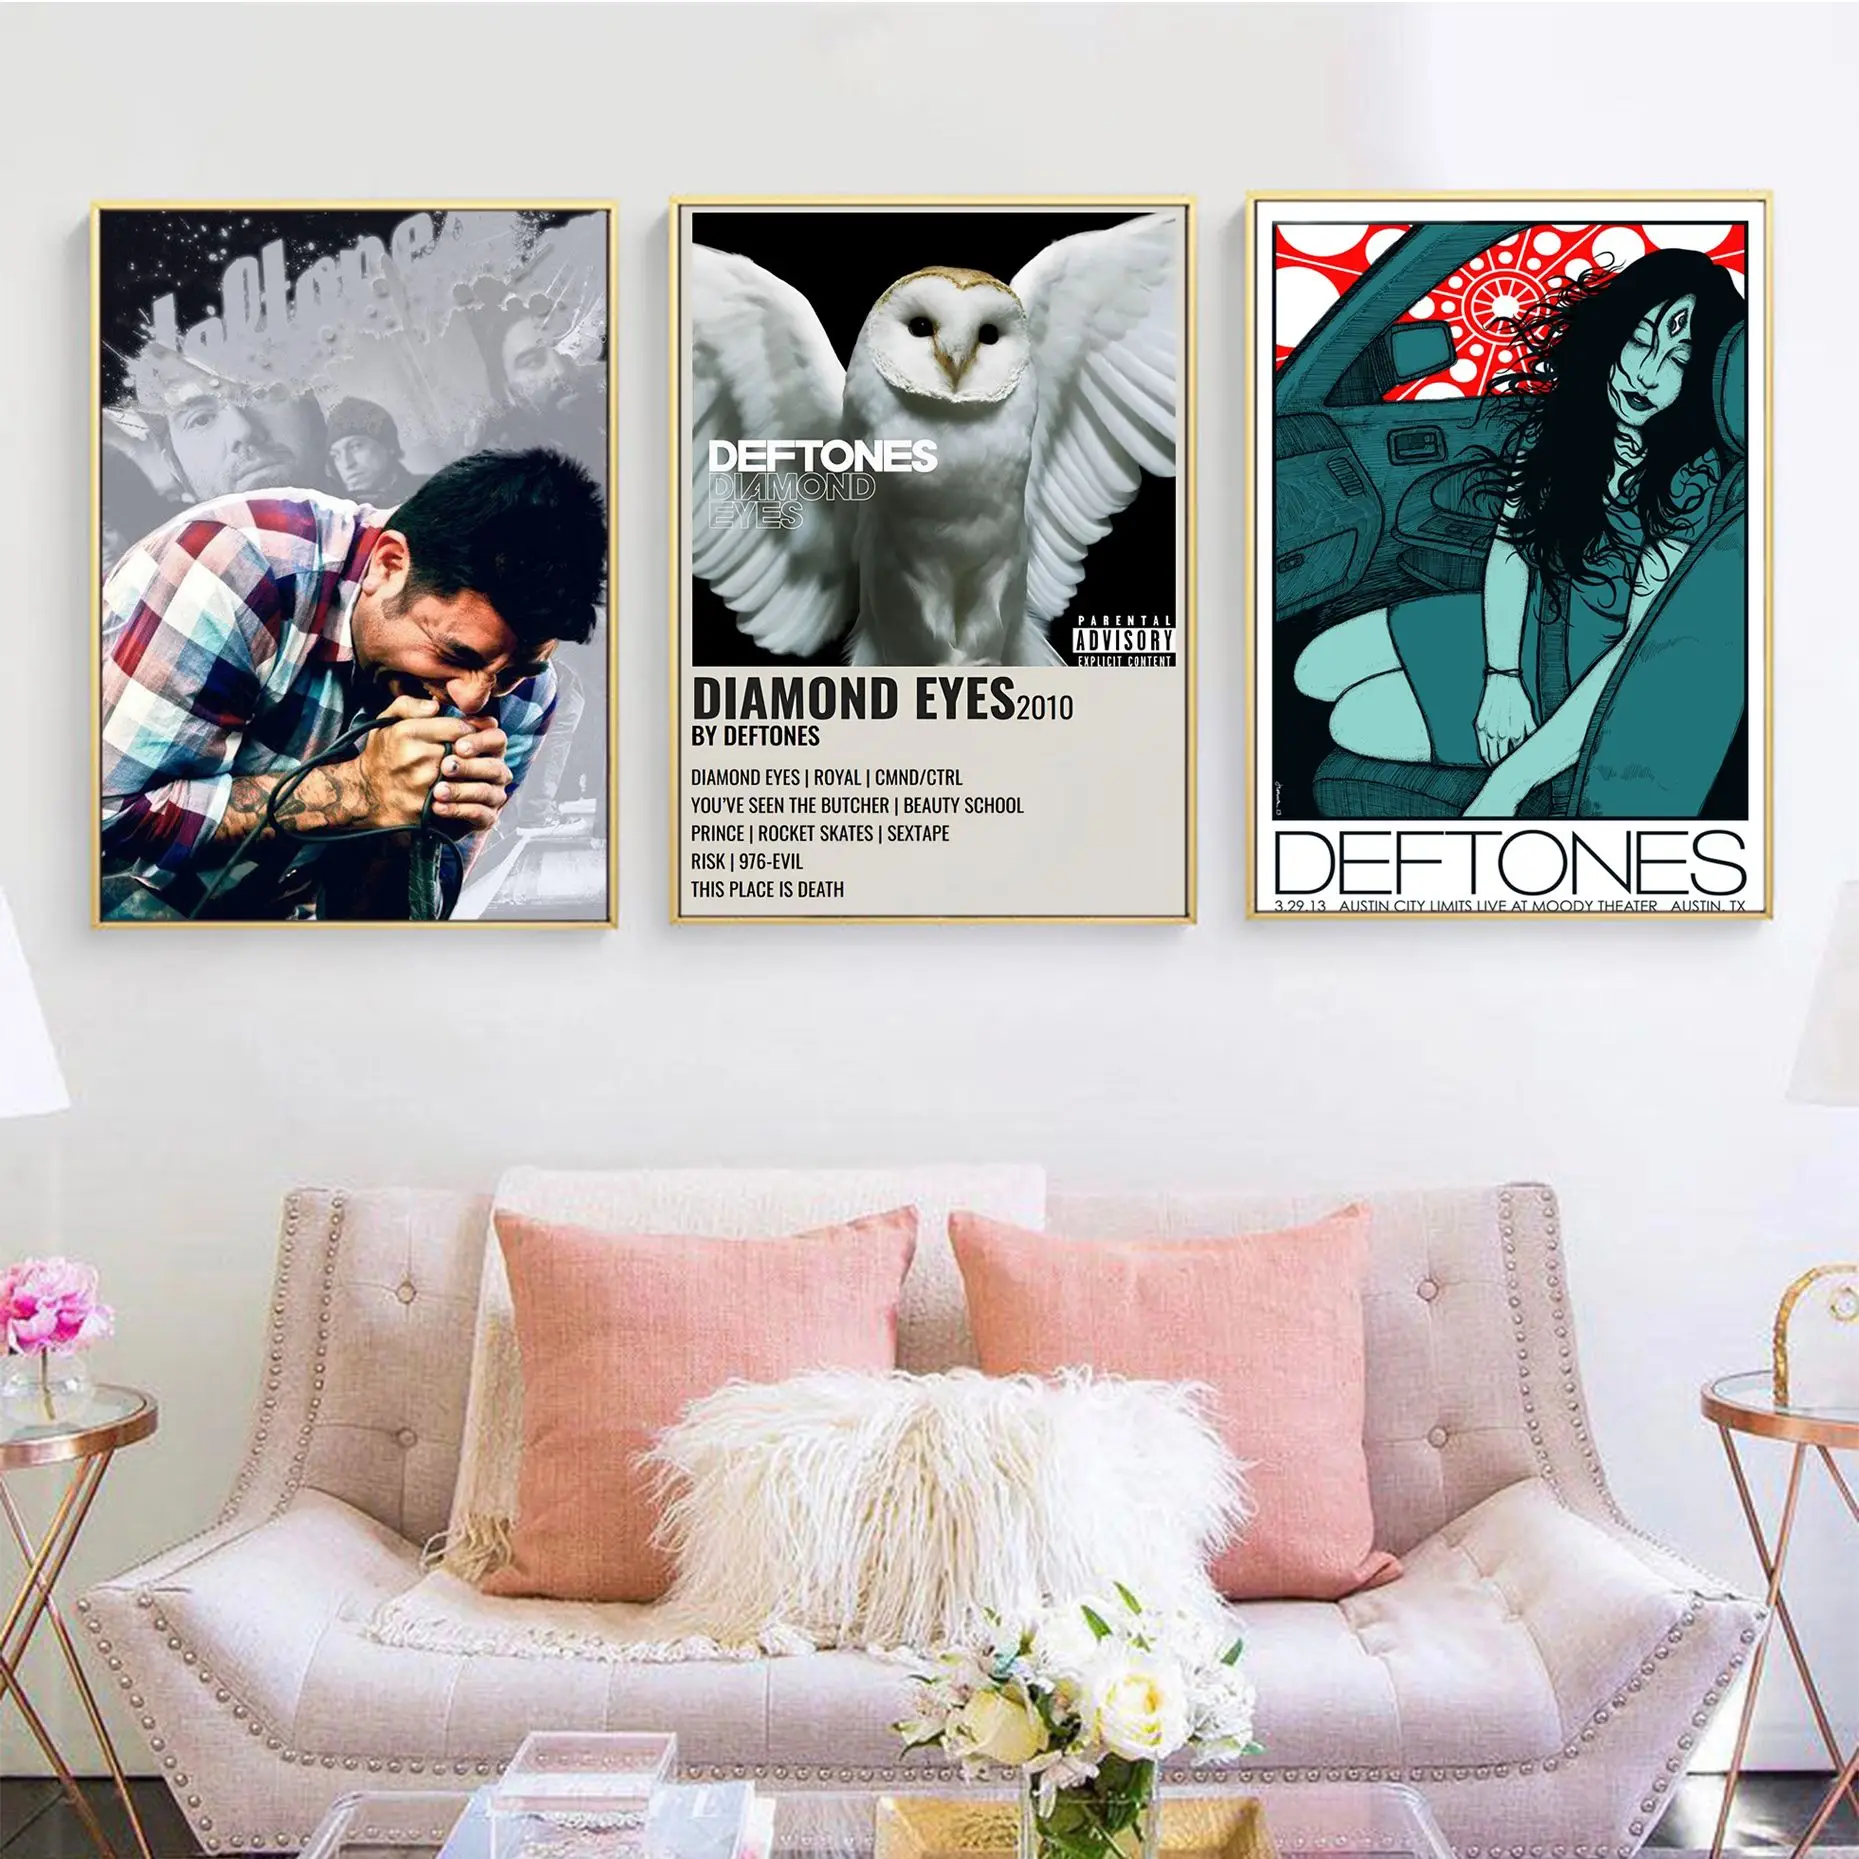 

Singer Deftones DIY Sticky Poster Whitepaper Sticker DIY Room Bar Cafe Room Wall Decor